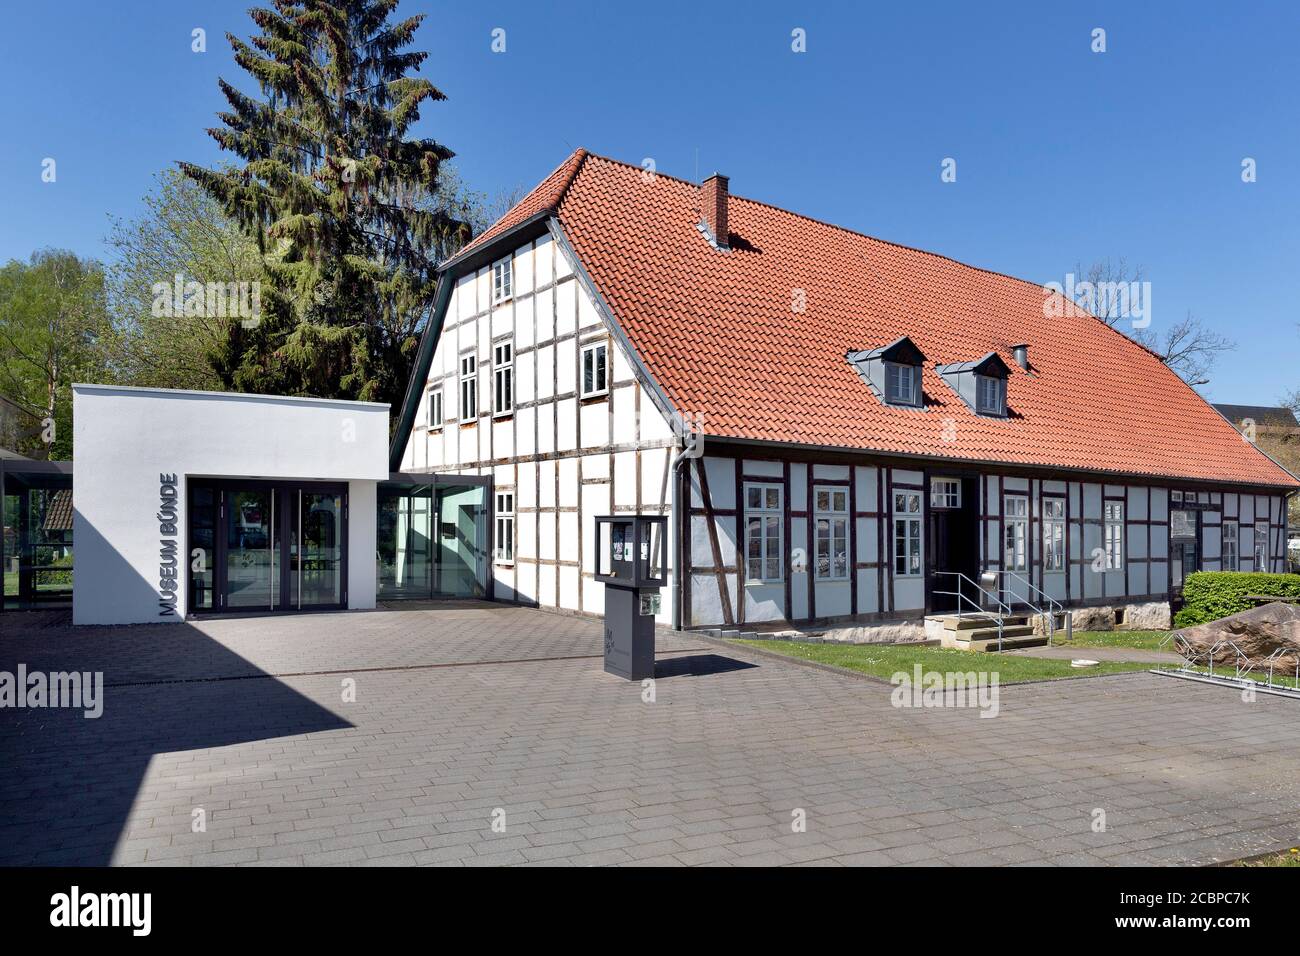 Le musée Buende se compose de maisons historiques à colombages, Dammhaus, Koetterhaus, Hurlbrinksche Haus, Meyerhof, Striedieckscher Hof, Buende, est Banque D'Images